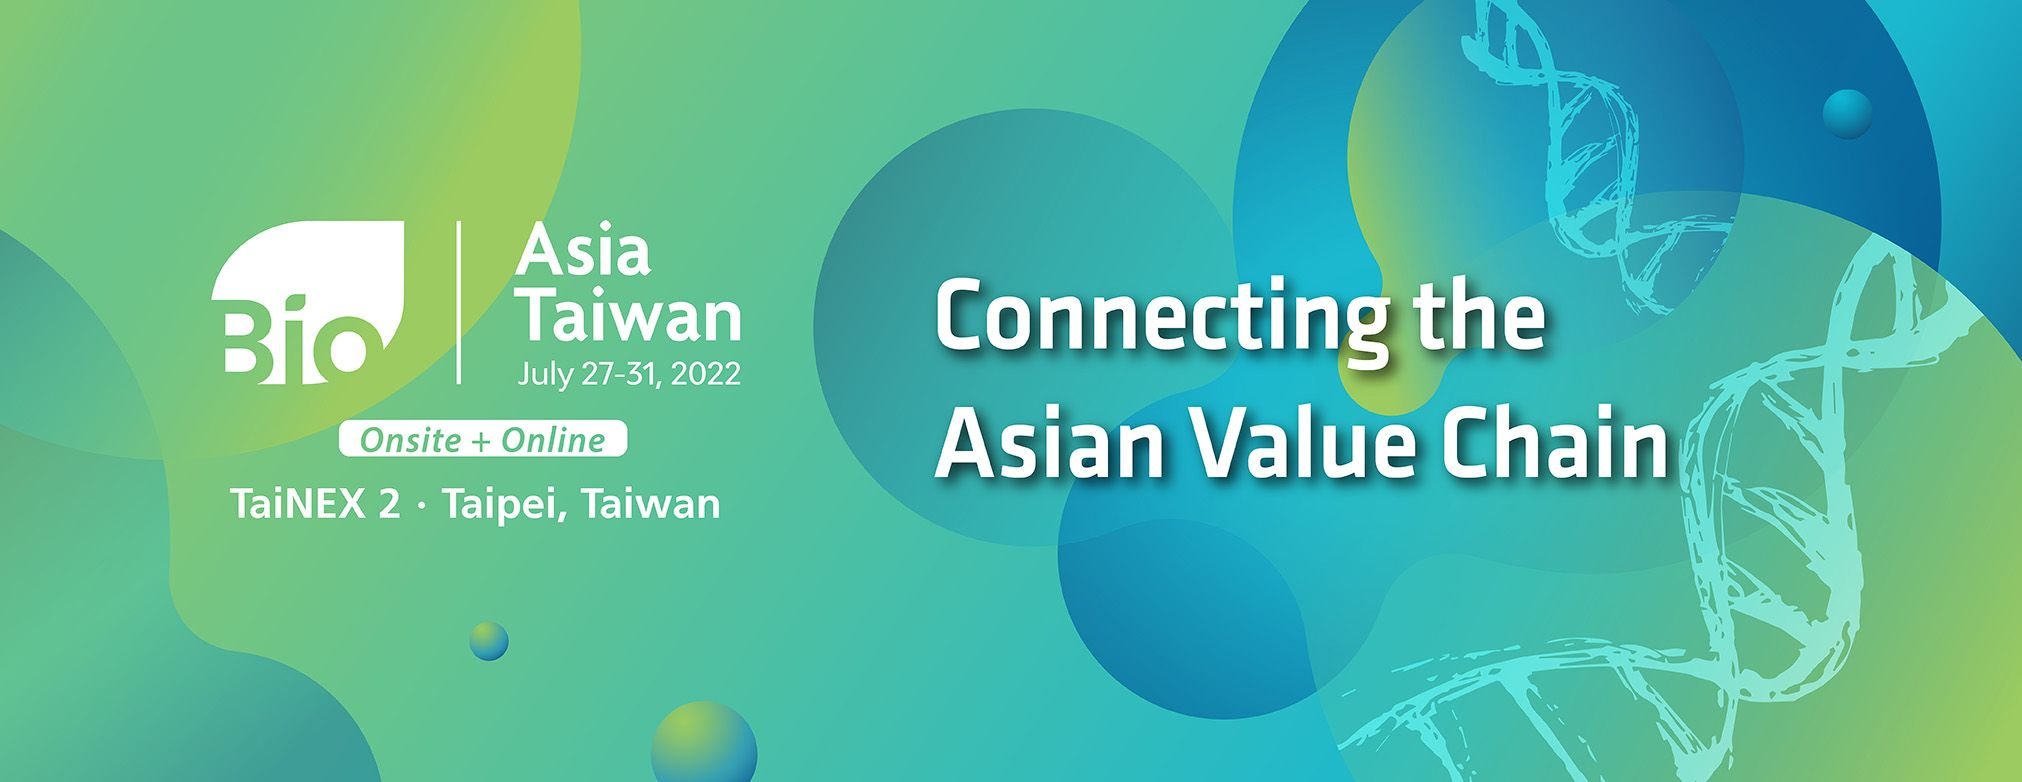 BioAsia Taiwán 2022